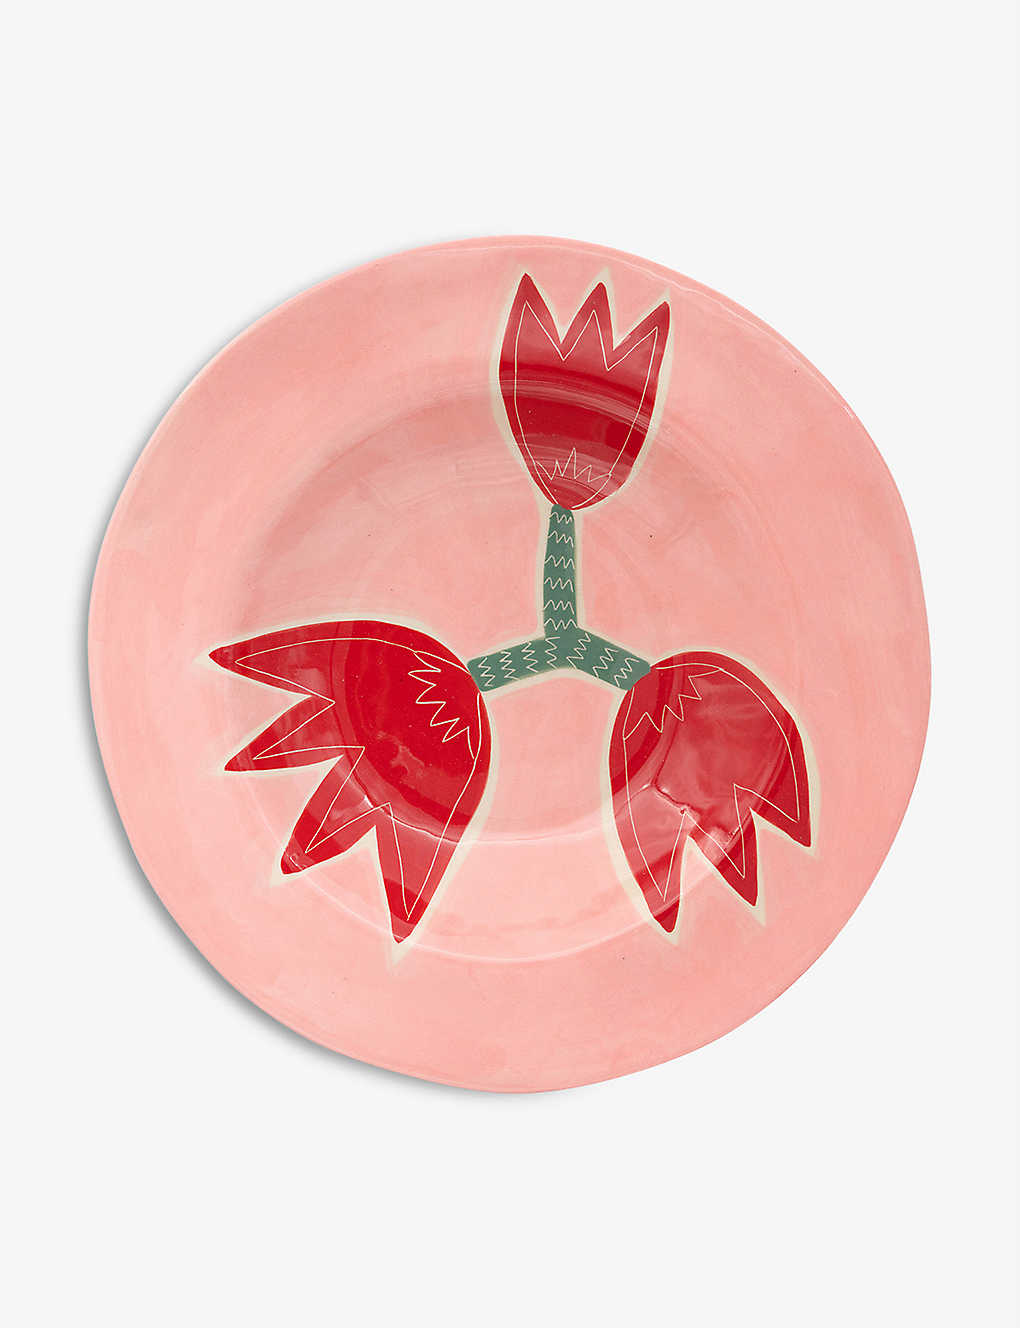 LAETITIA ROUGET `[bv 菑Z~bNv[g 26cm Tulip hand-painted ceramic plate 26cm